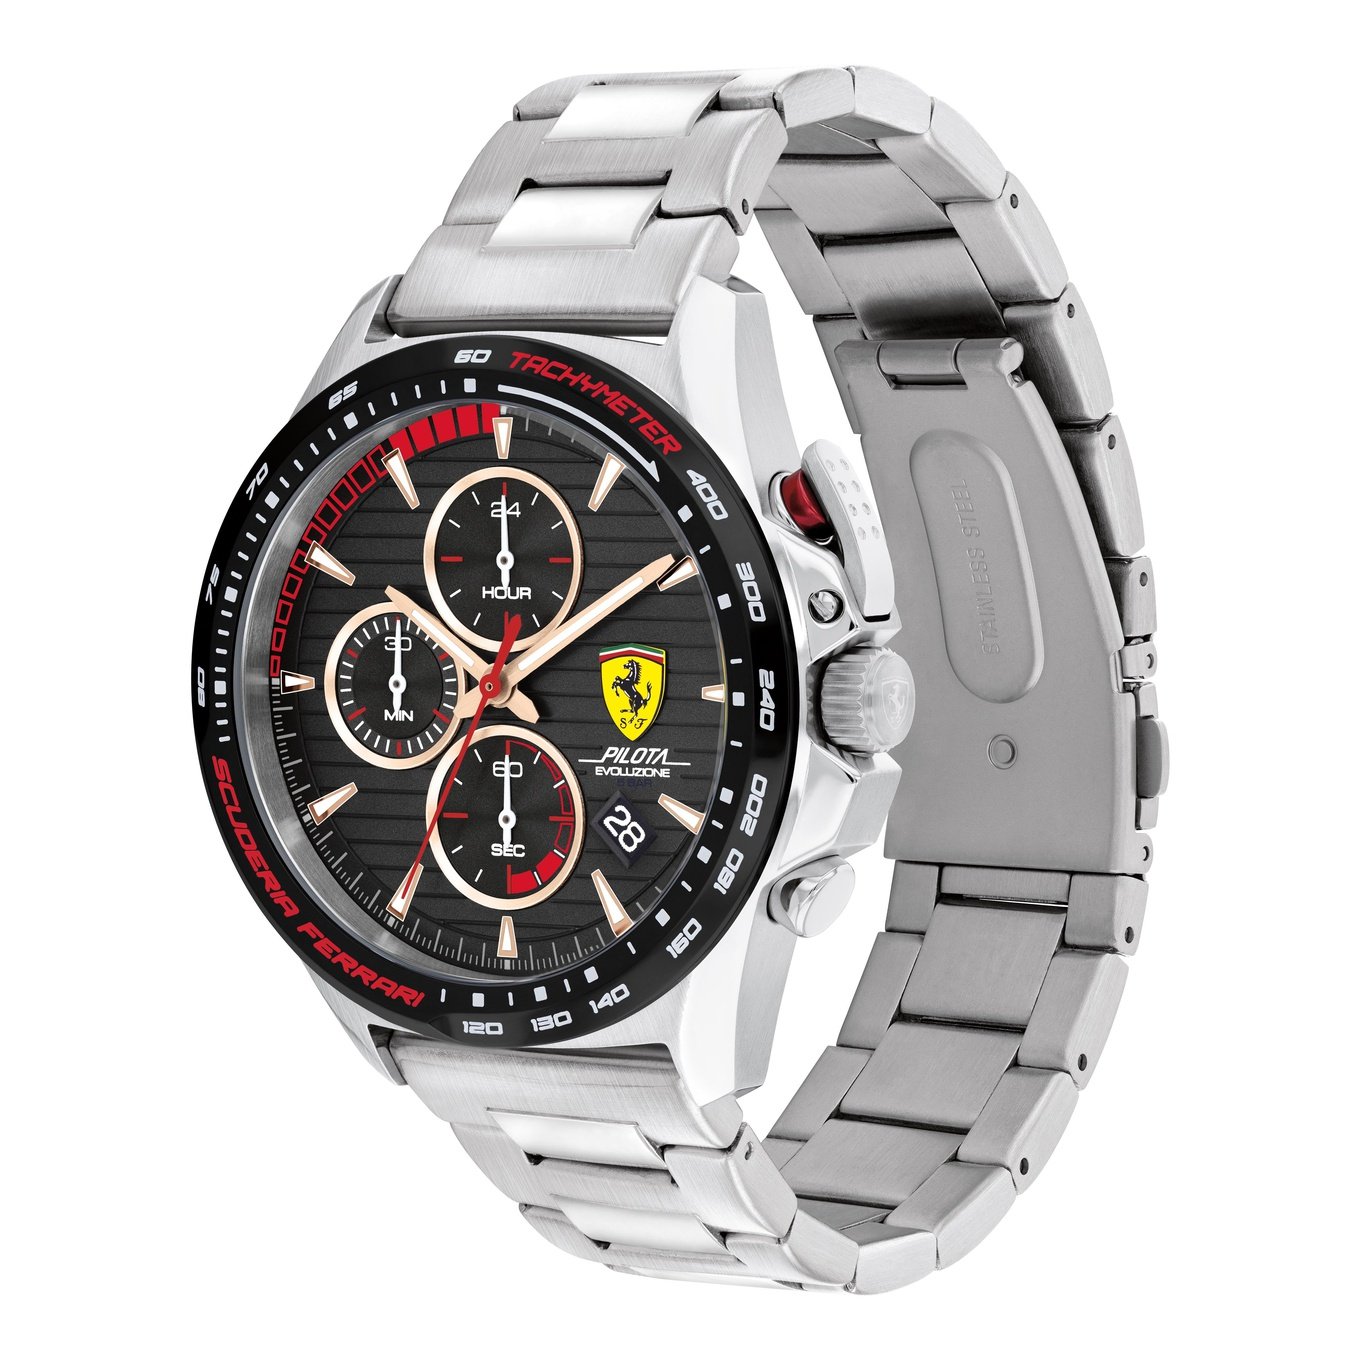 Men's Pilota Evo Watch 0830852 Scuderia Ferrari